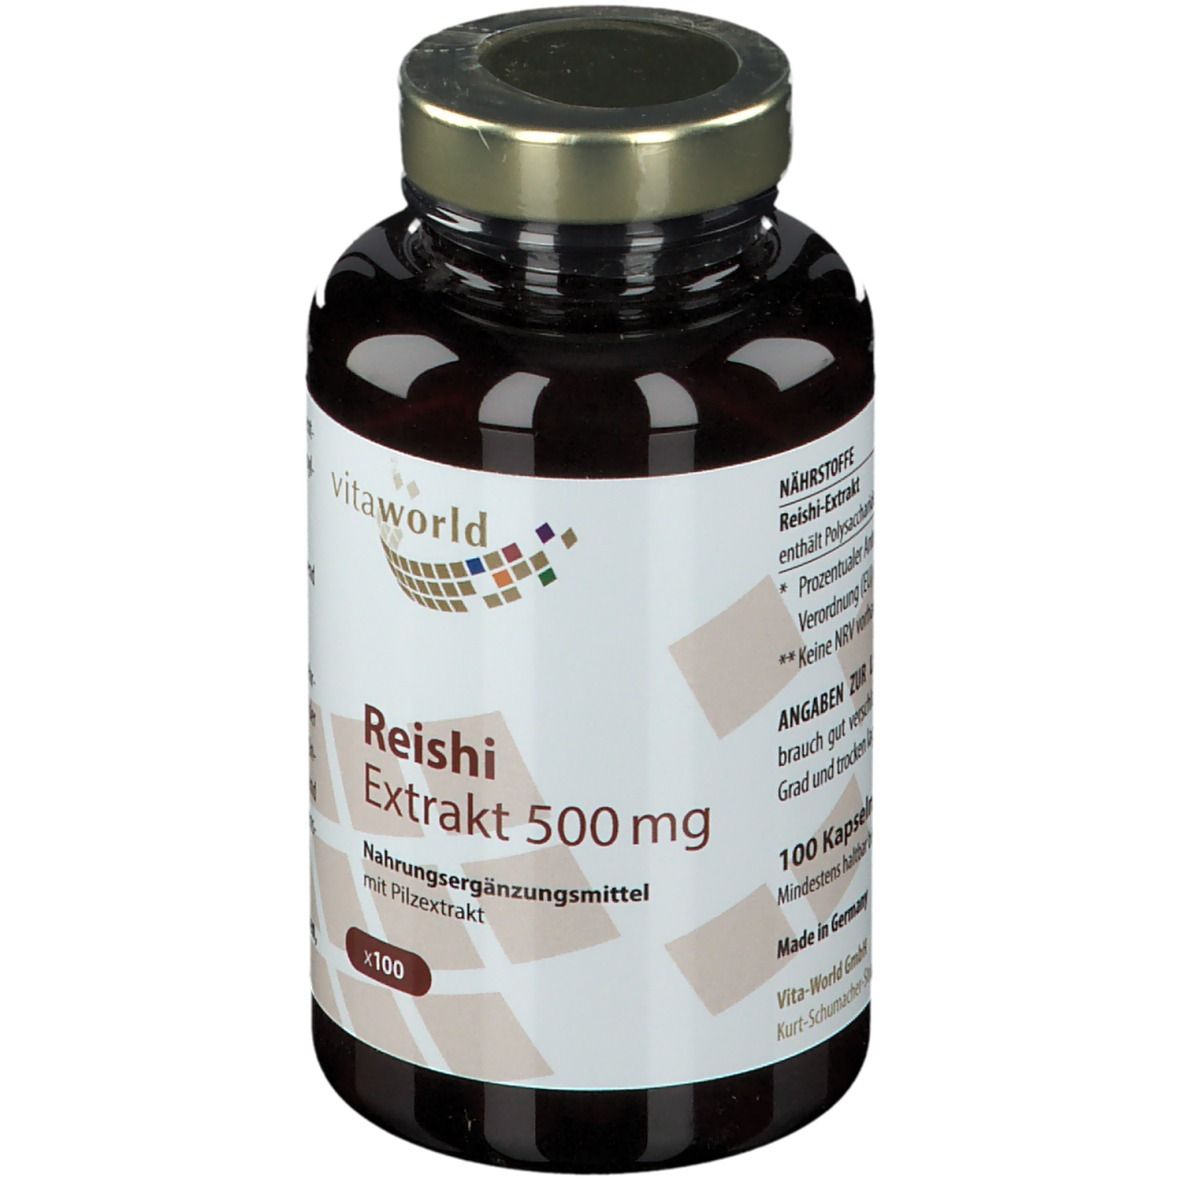 Reishi extract 500 mg